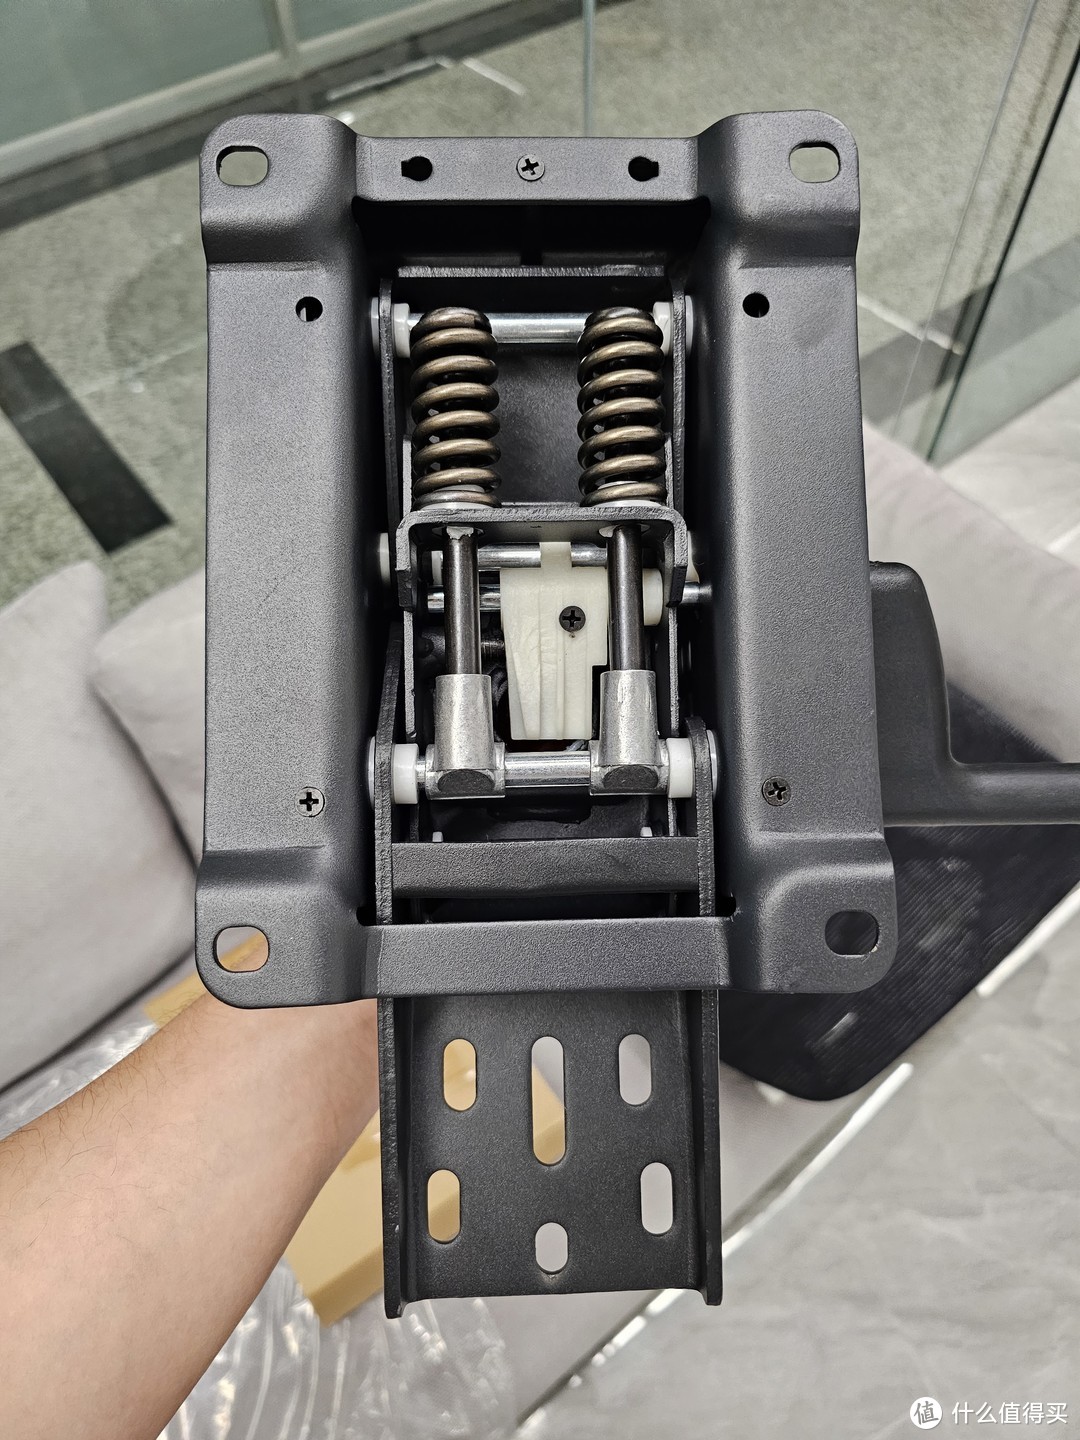 菲迪F181人体工学椅真实开箱分享